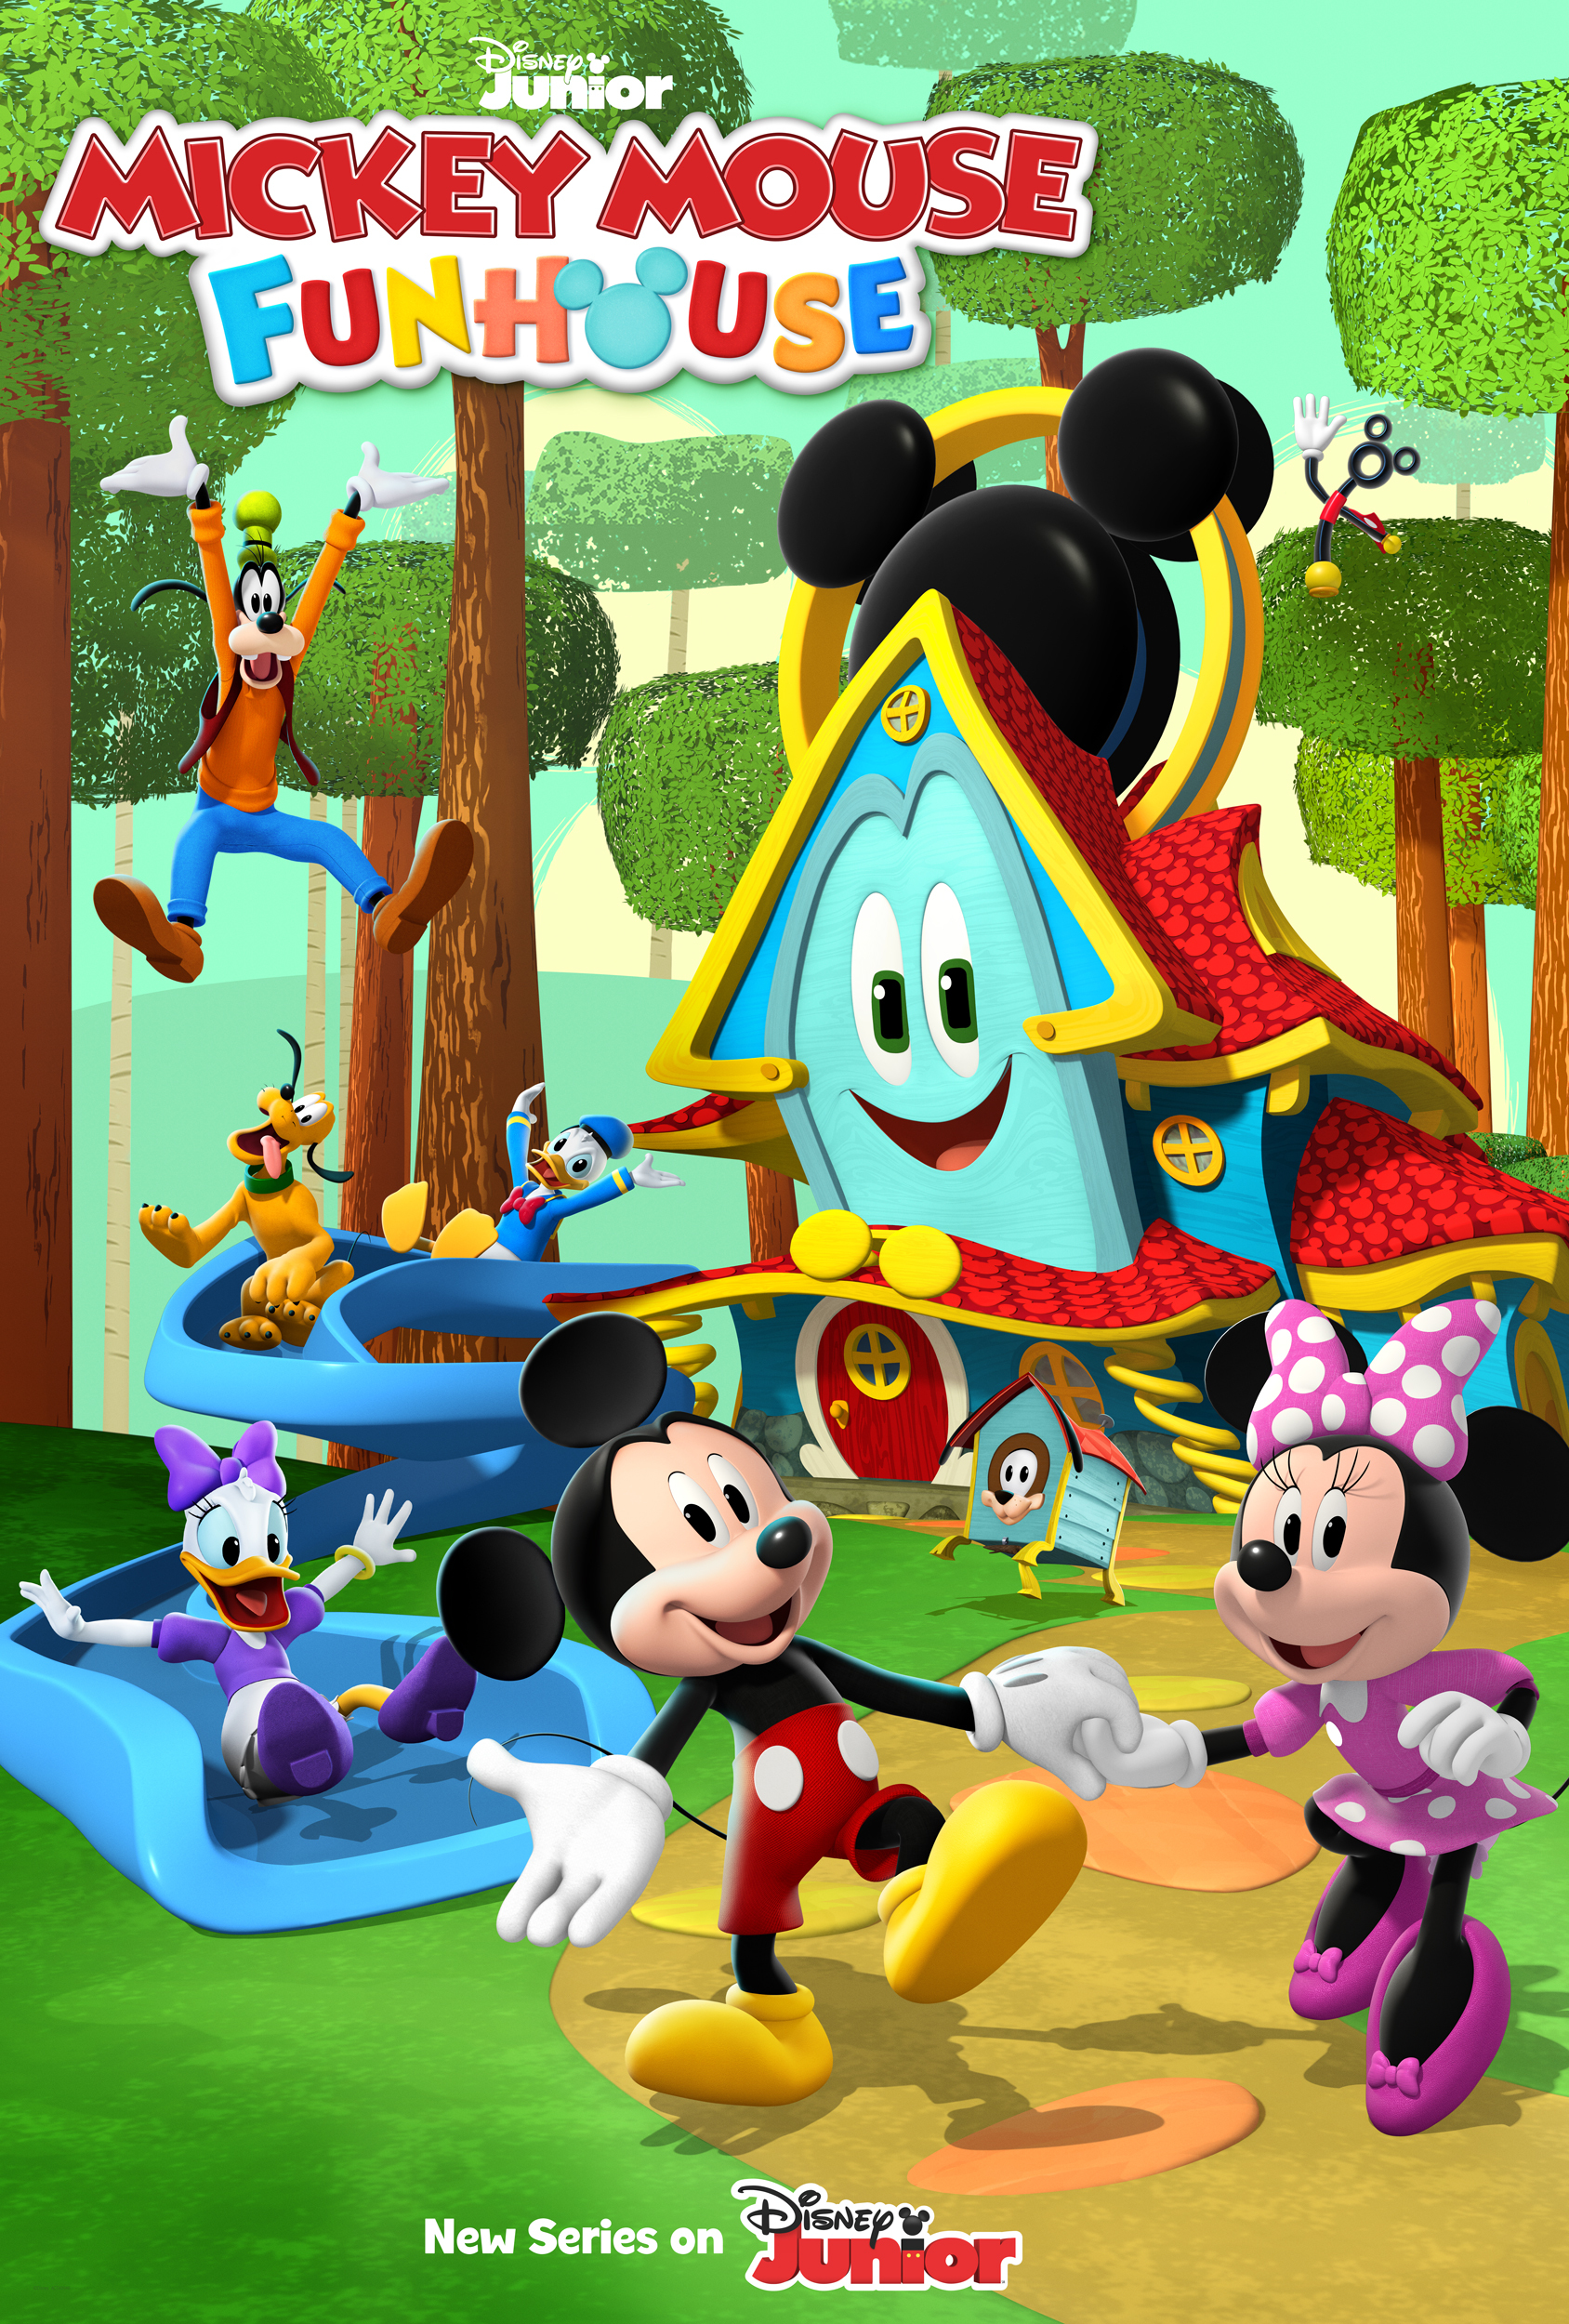 La Casa De Mickey Mouse Juegos Y Entretenimientos